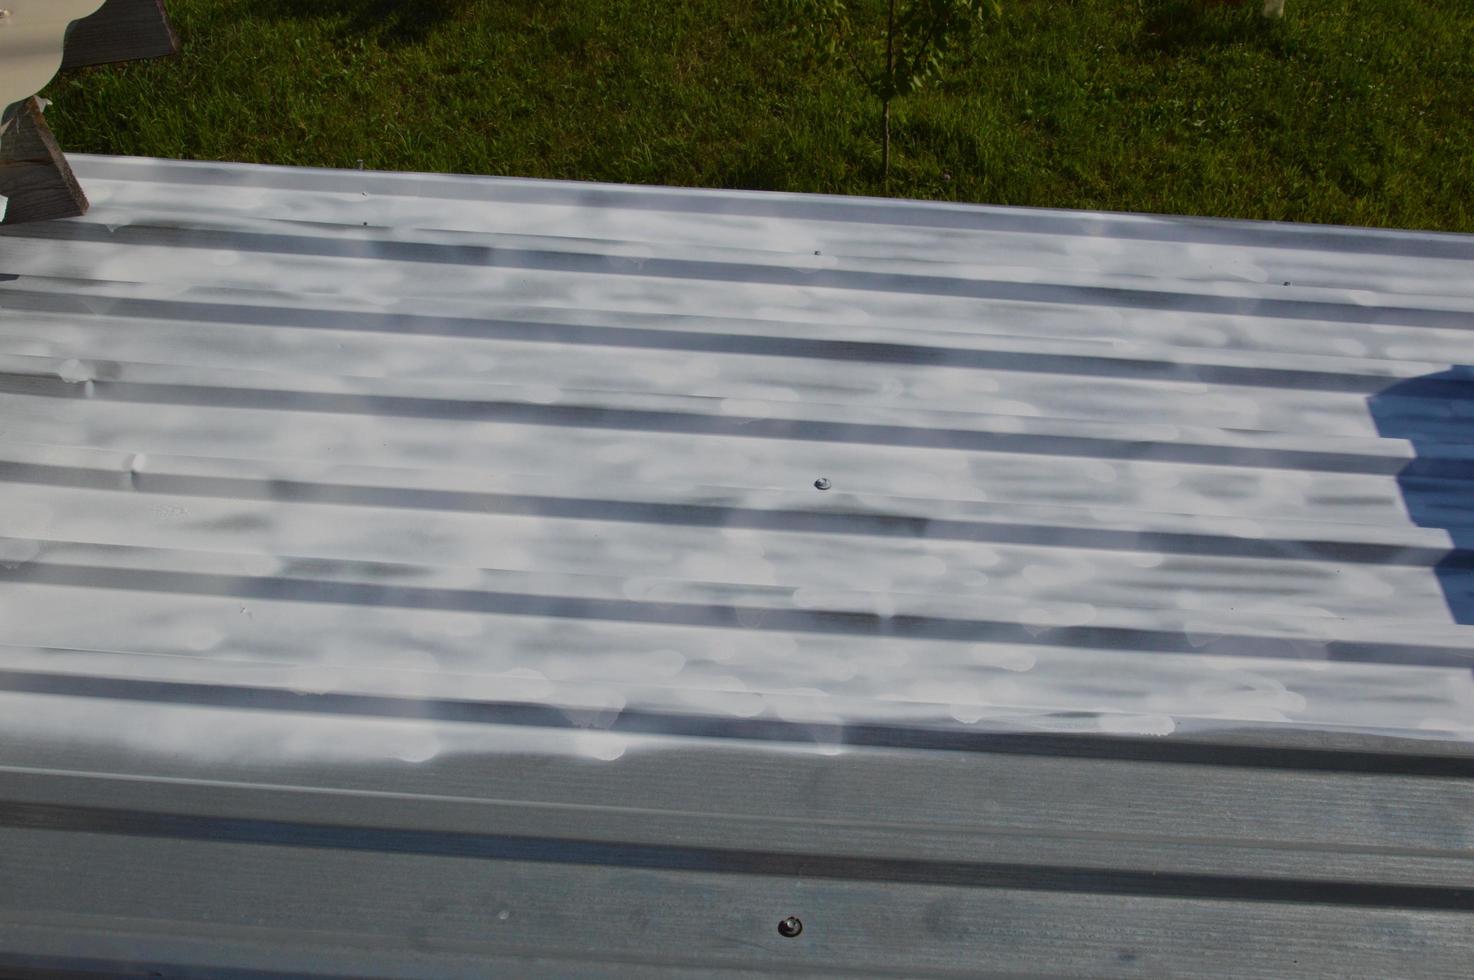 verniciatura del tetto con vernice a smalto da una bomboletta spray foto